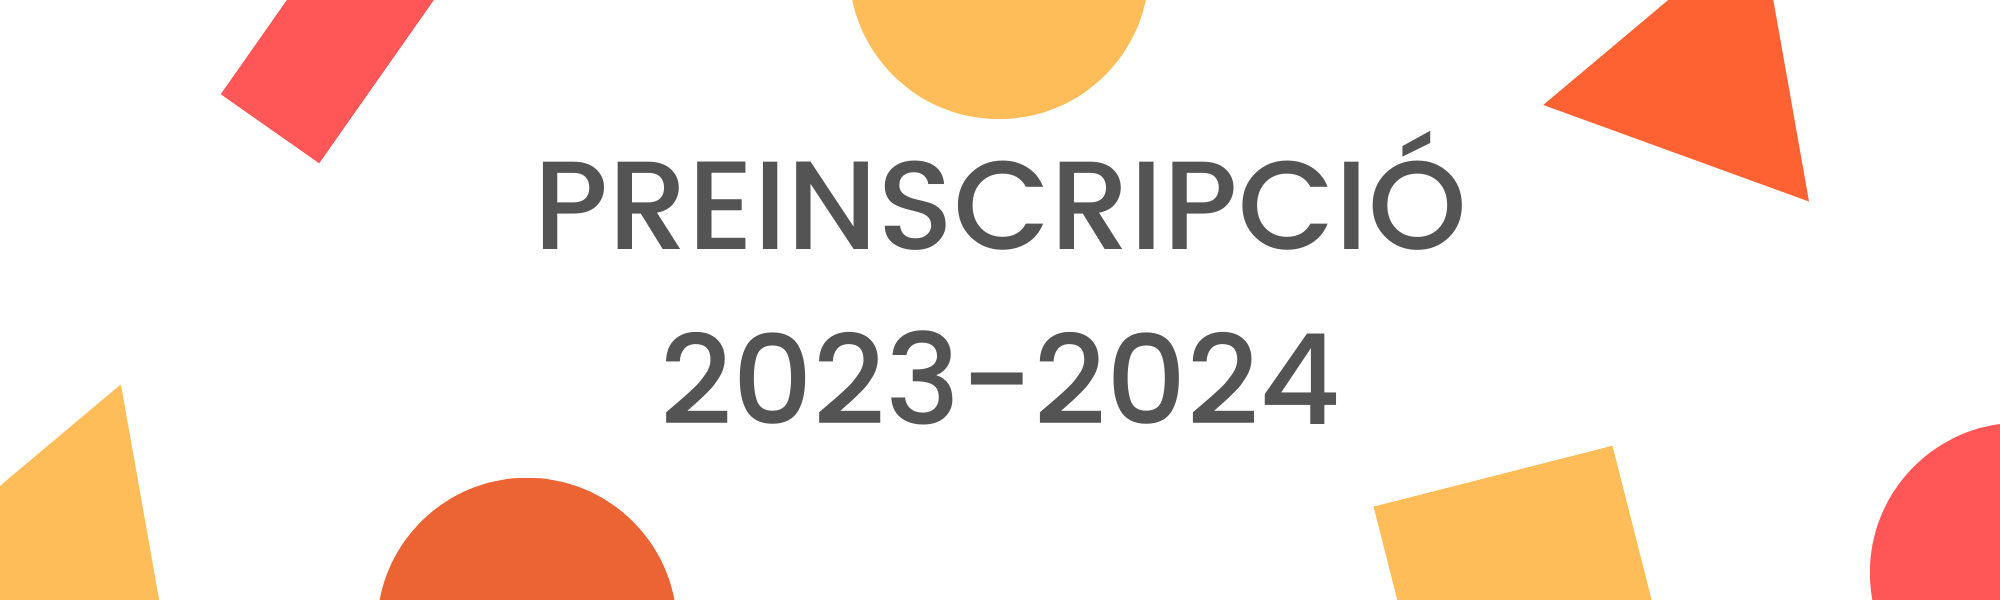 PREINSCRIPCIÓ 2023/2024 | Escola Ferran de Sagarra